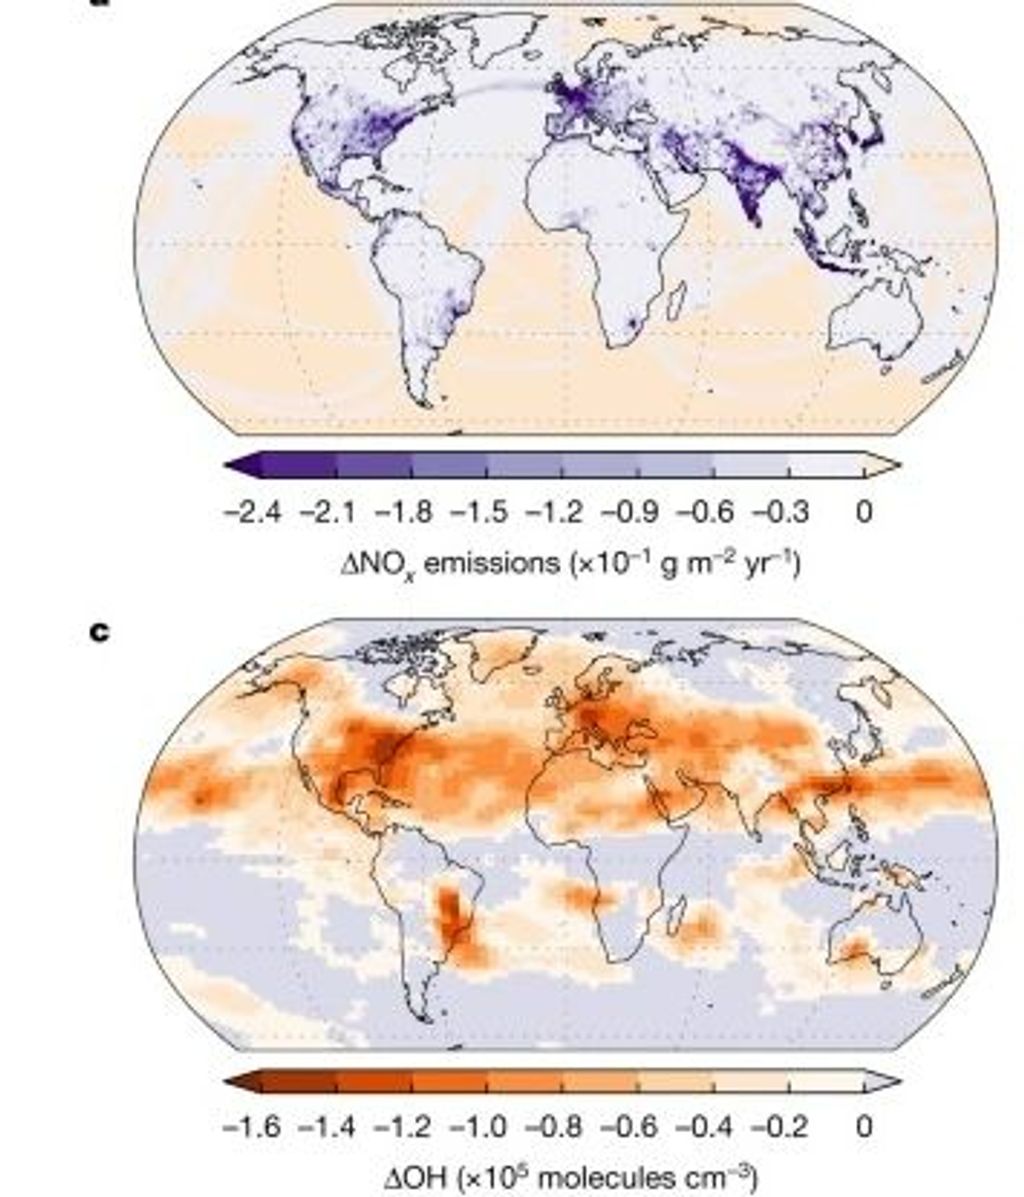 Patrones espaciales de anomalía de emisiones de NOx y anomalía de OH en 2020 en relación con 2019